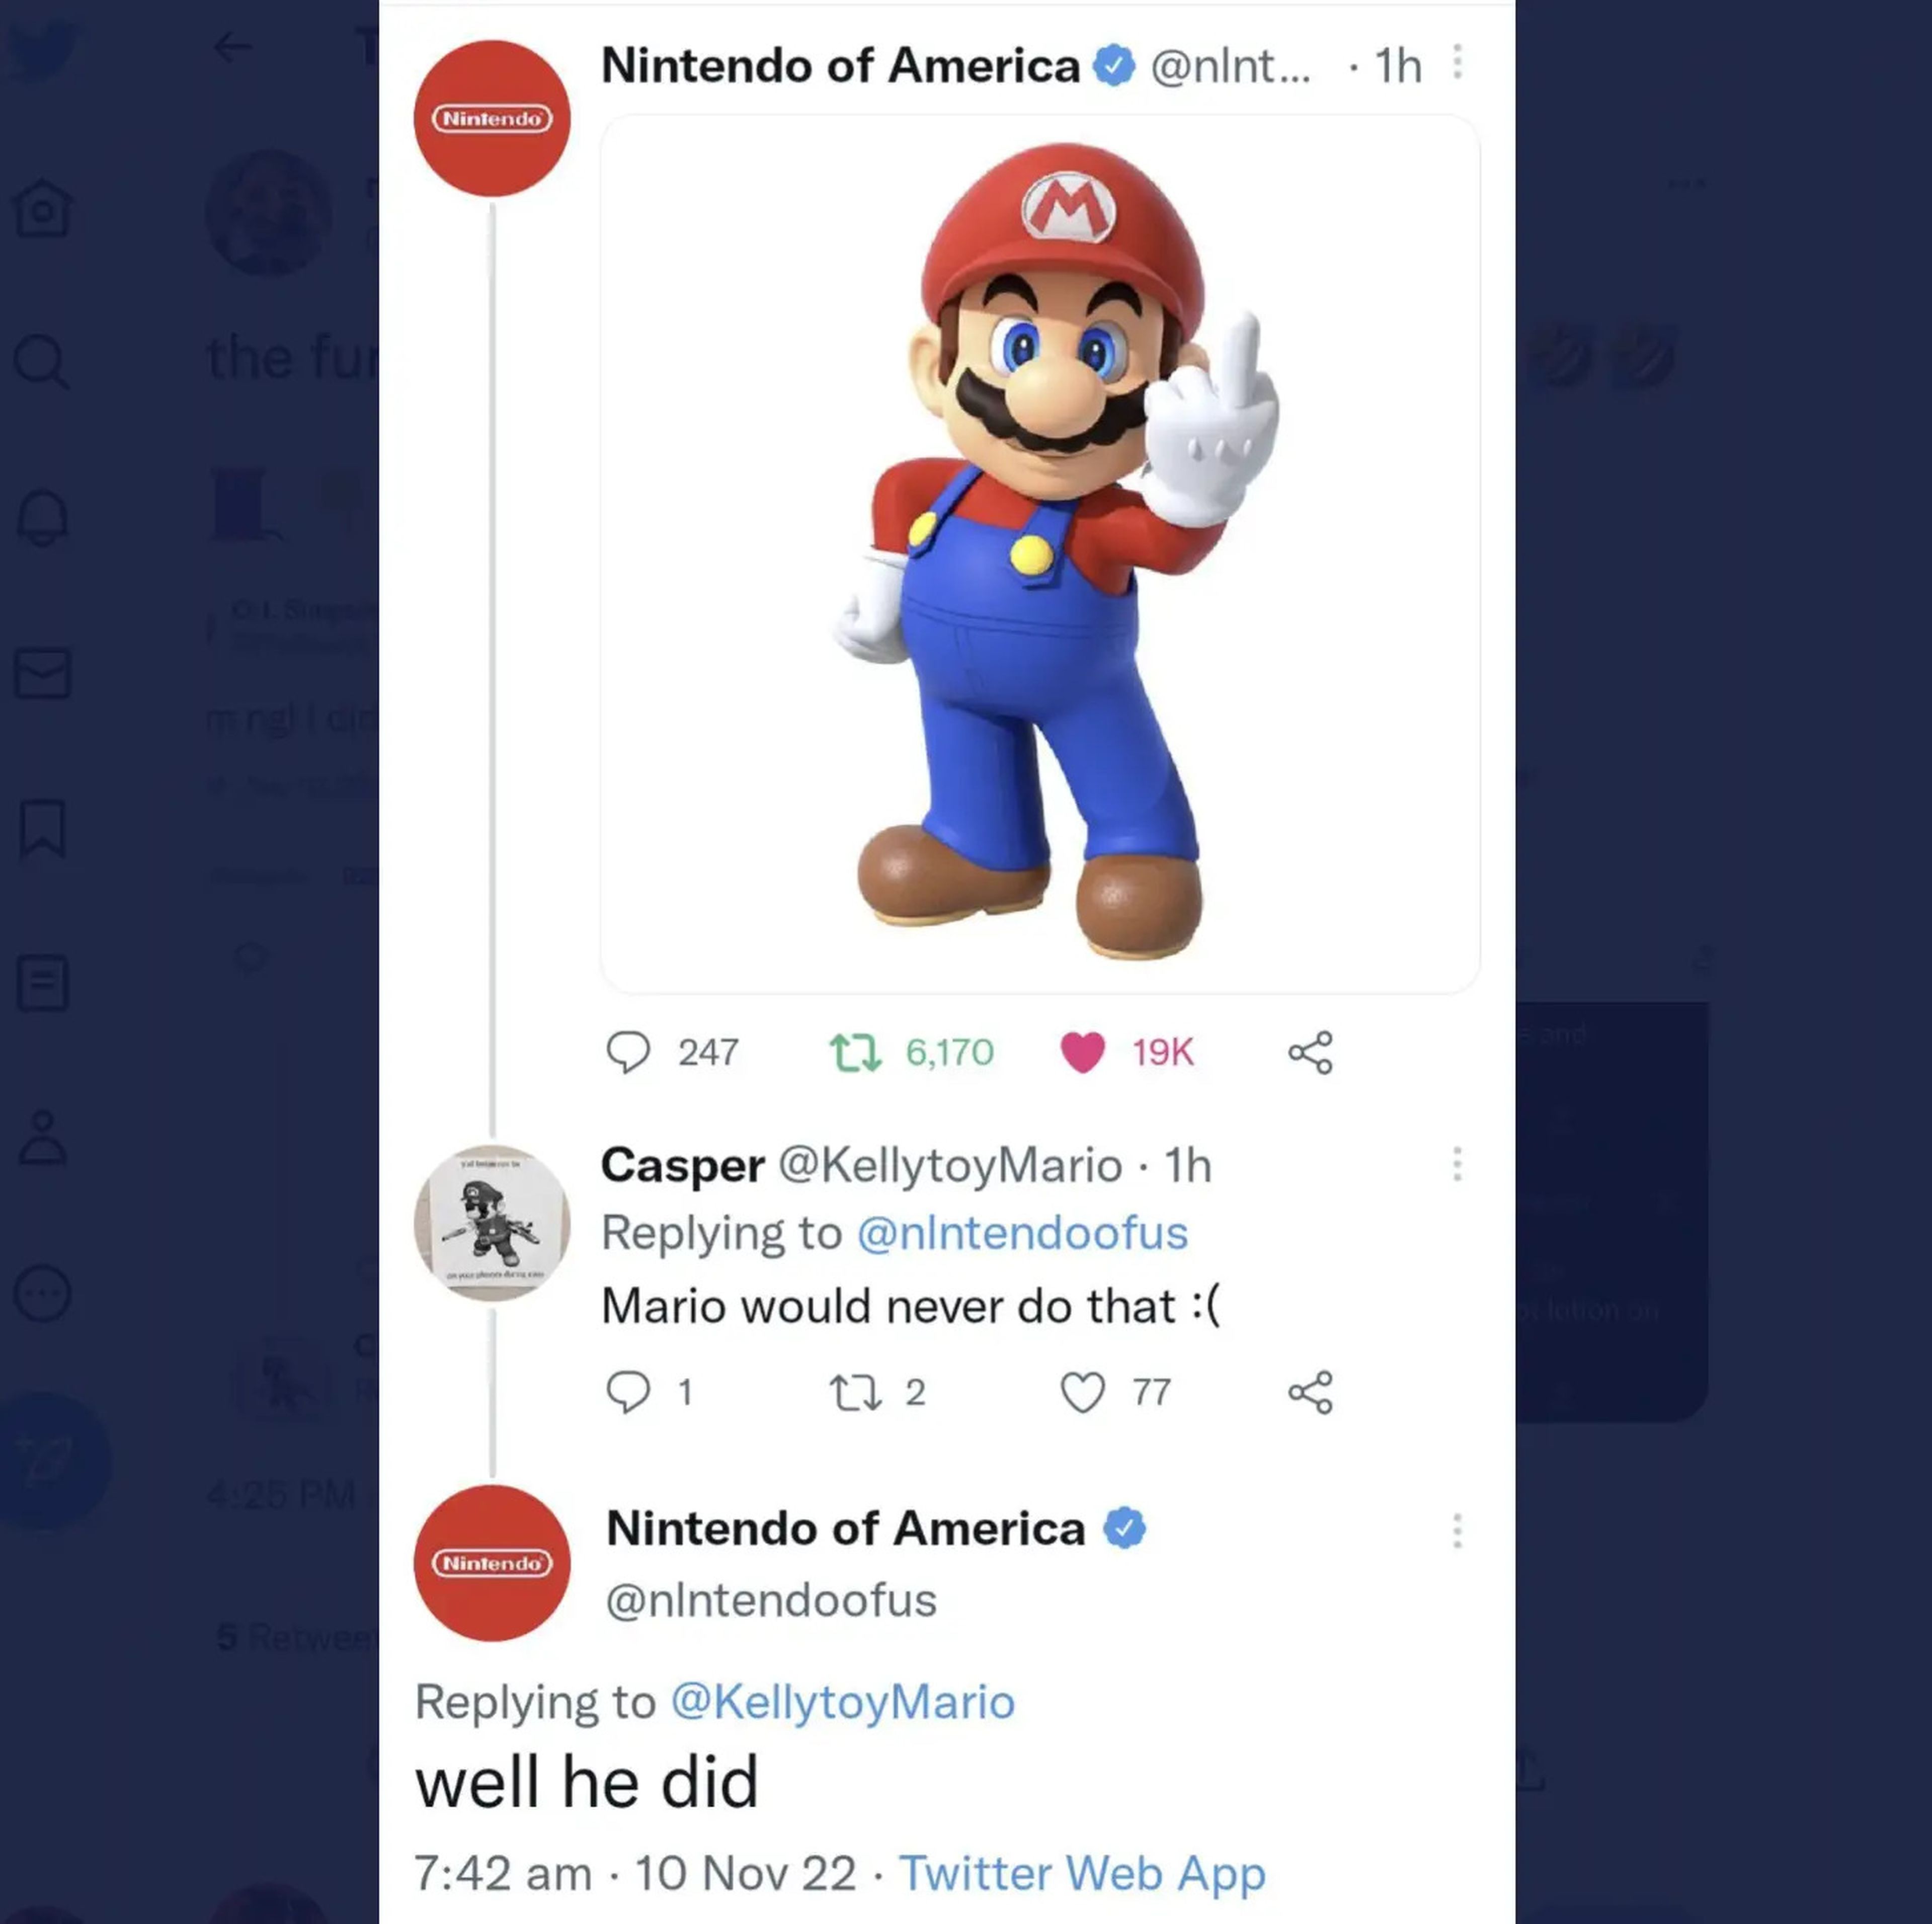 Tweet from Nintendo impersonator